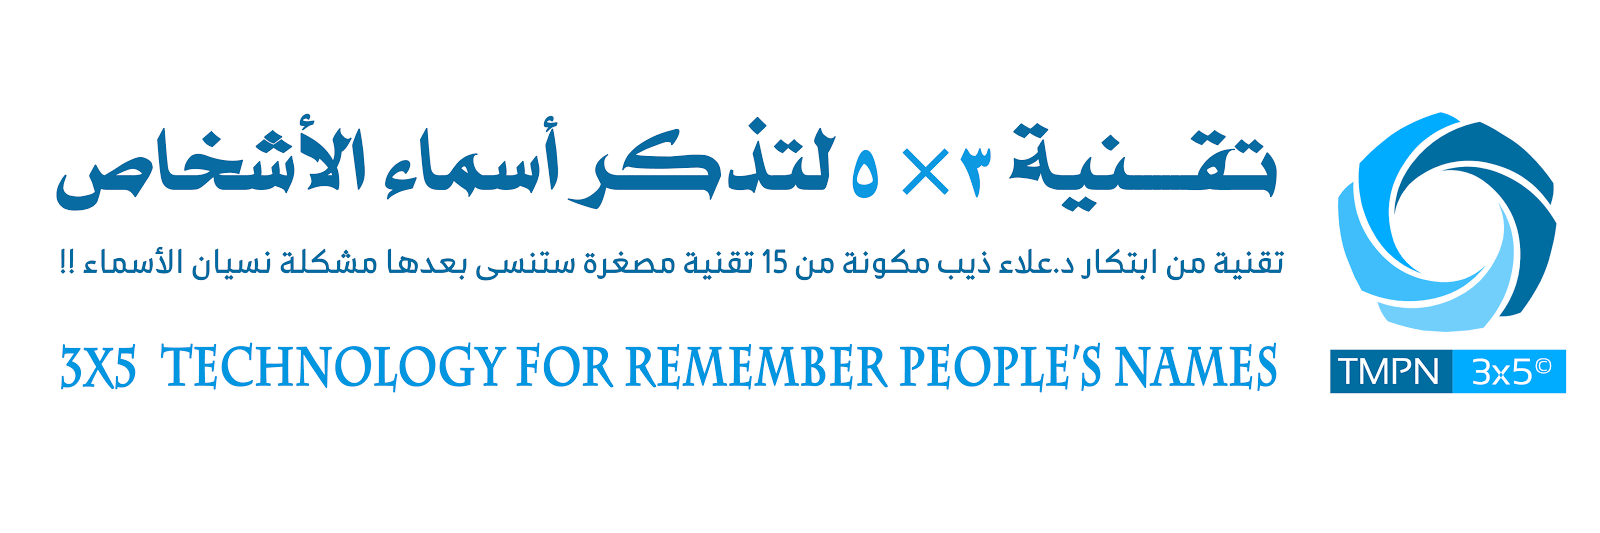 تقــــــنية 3×5 لتذكر أسماء الأشخاص TRPN3x5© | ابتكار د.علاء ذيب